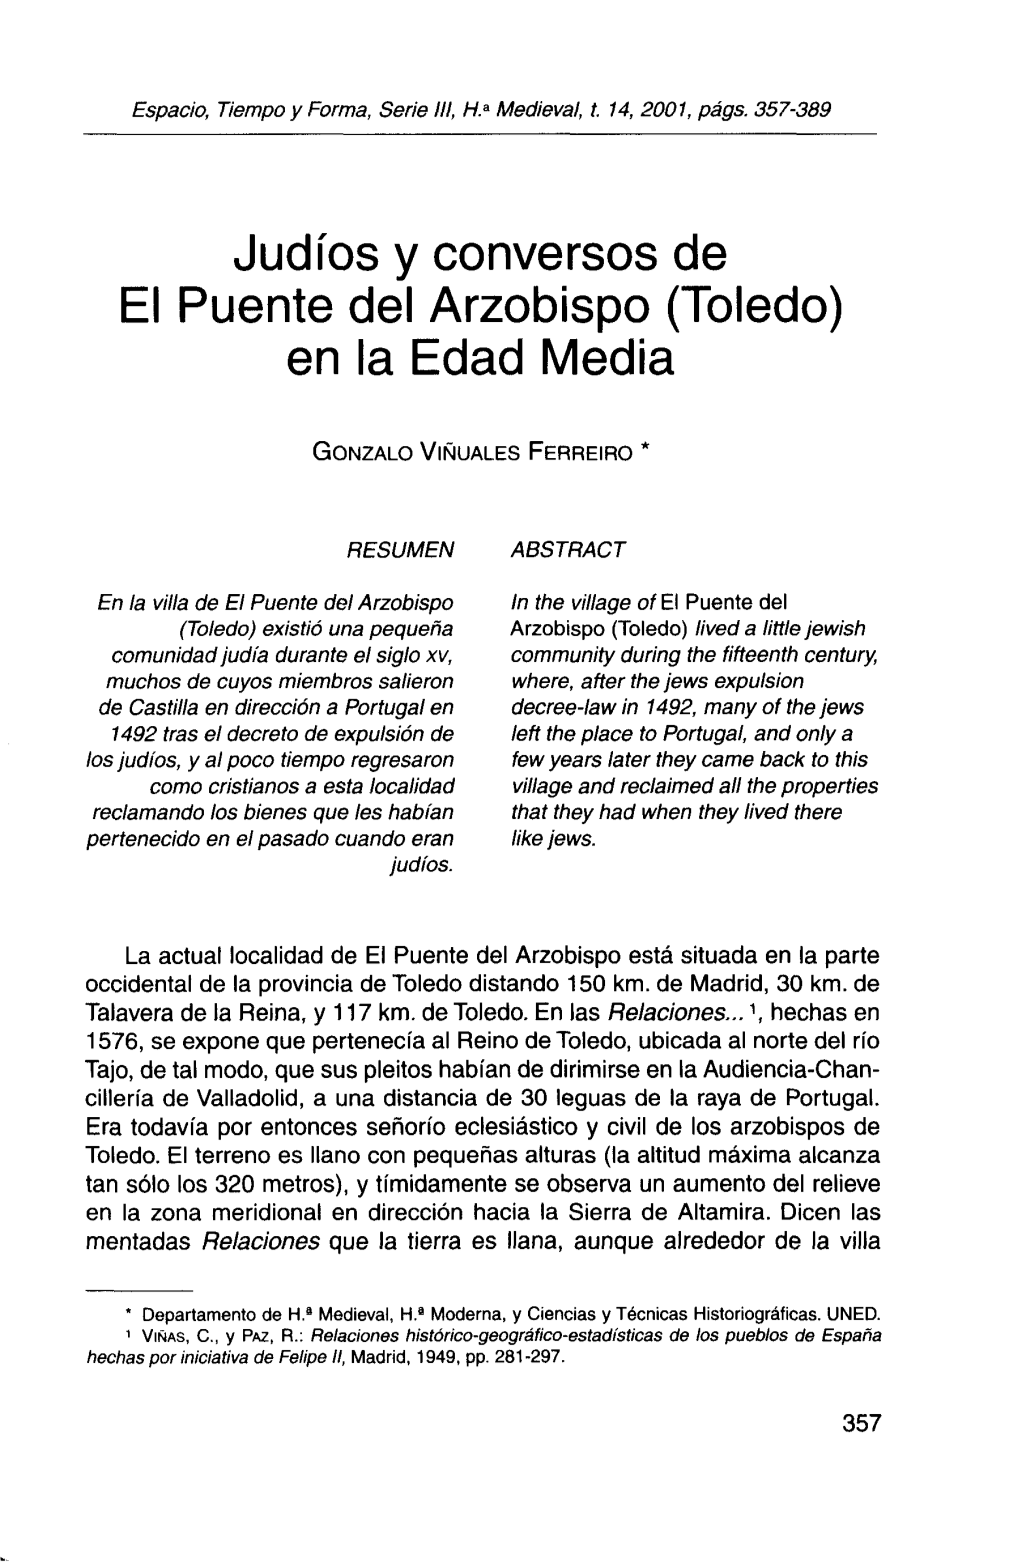 Judíos Y Conversos De El Puente Del Arzobispo (Toledo) En La Edad Media